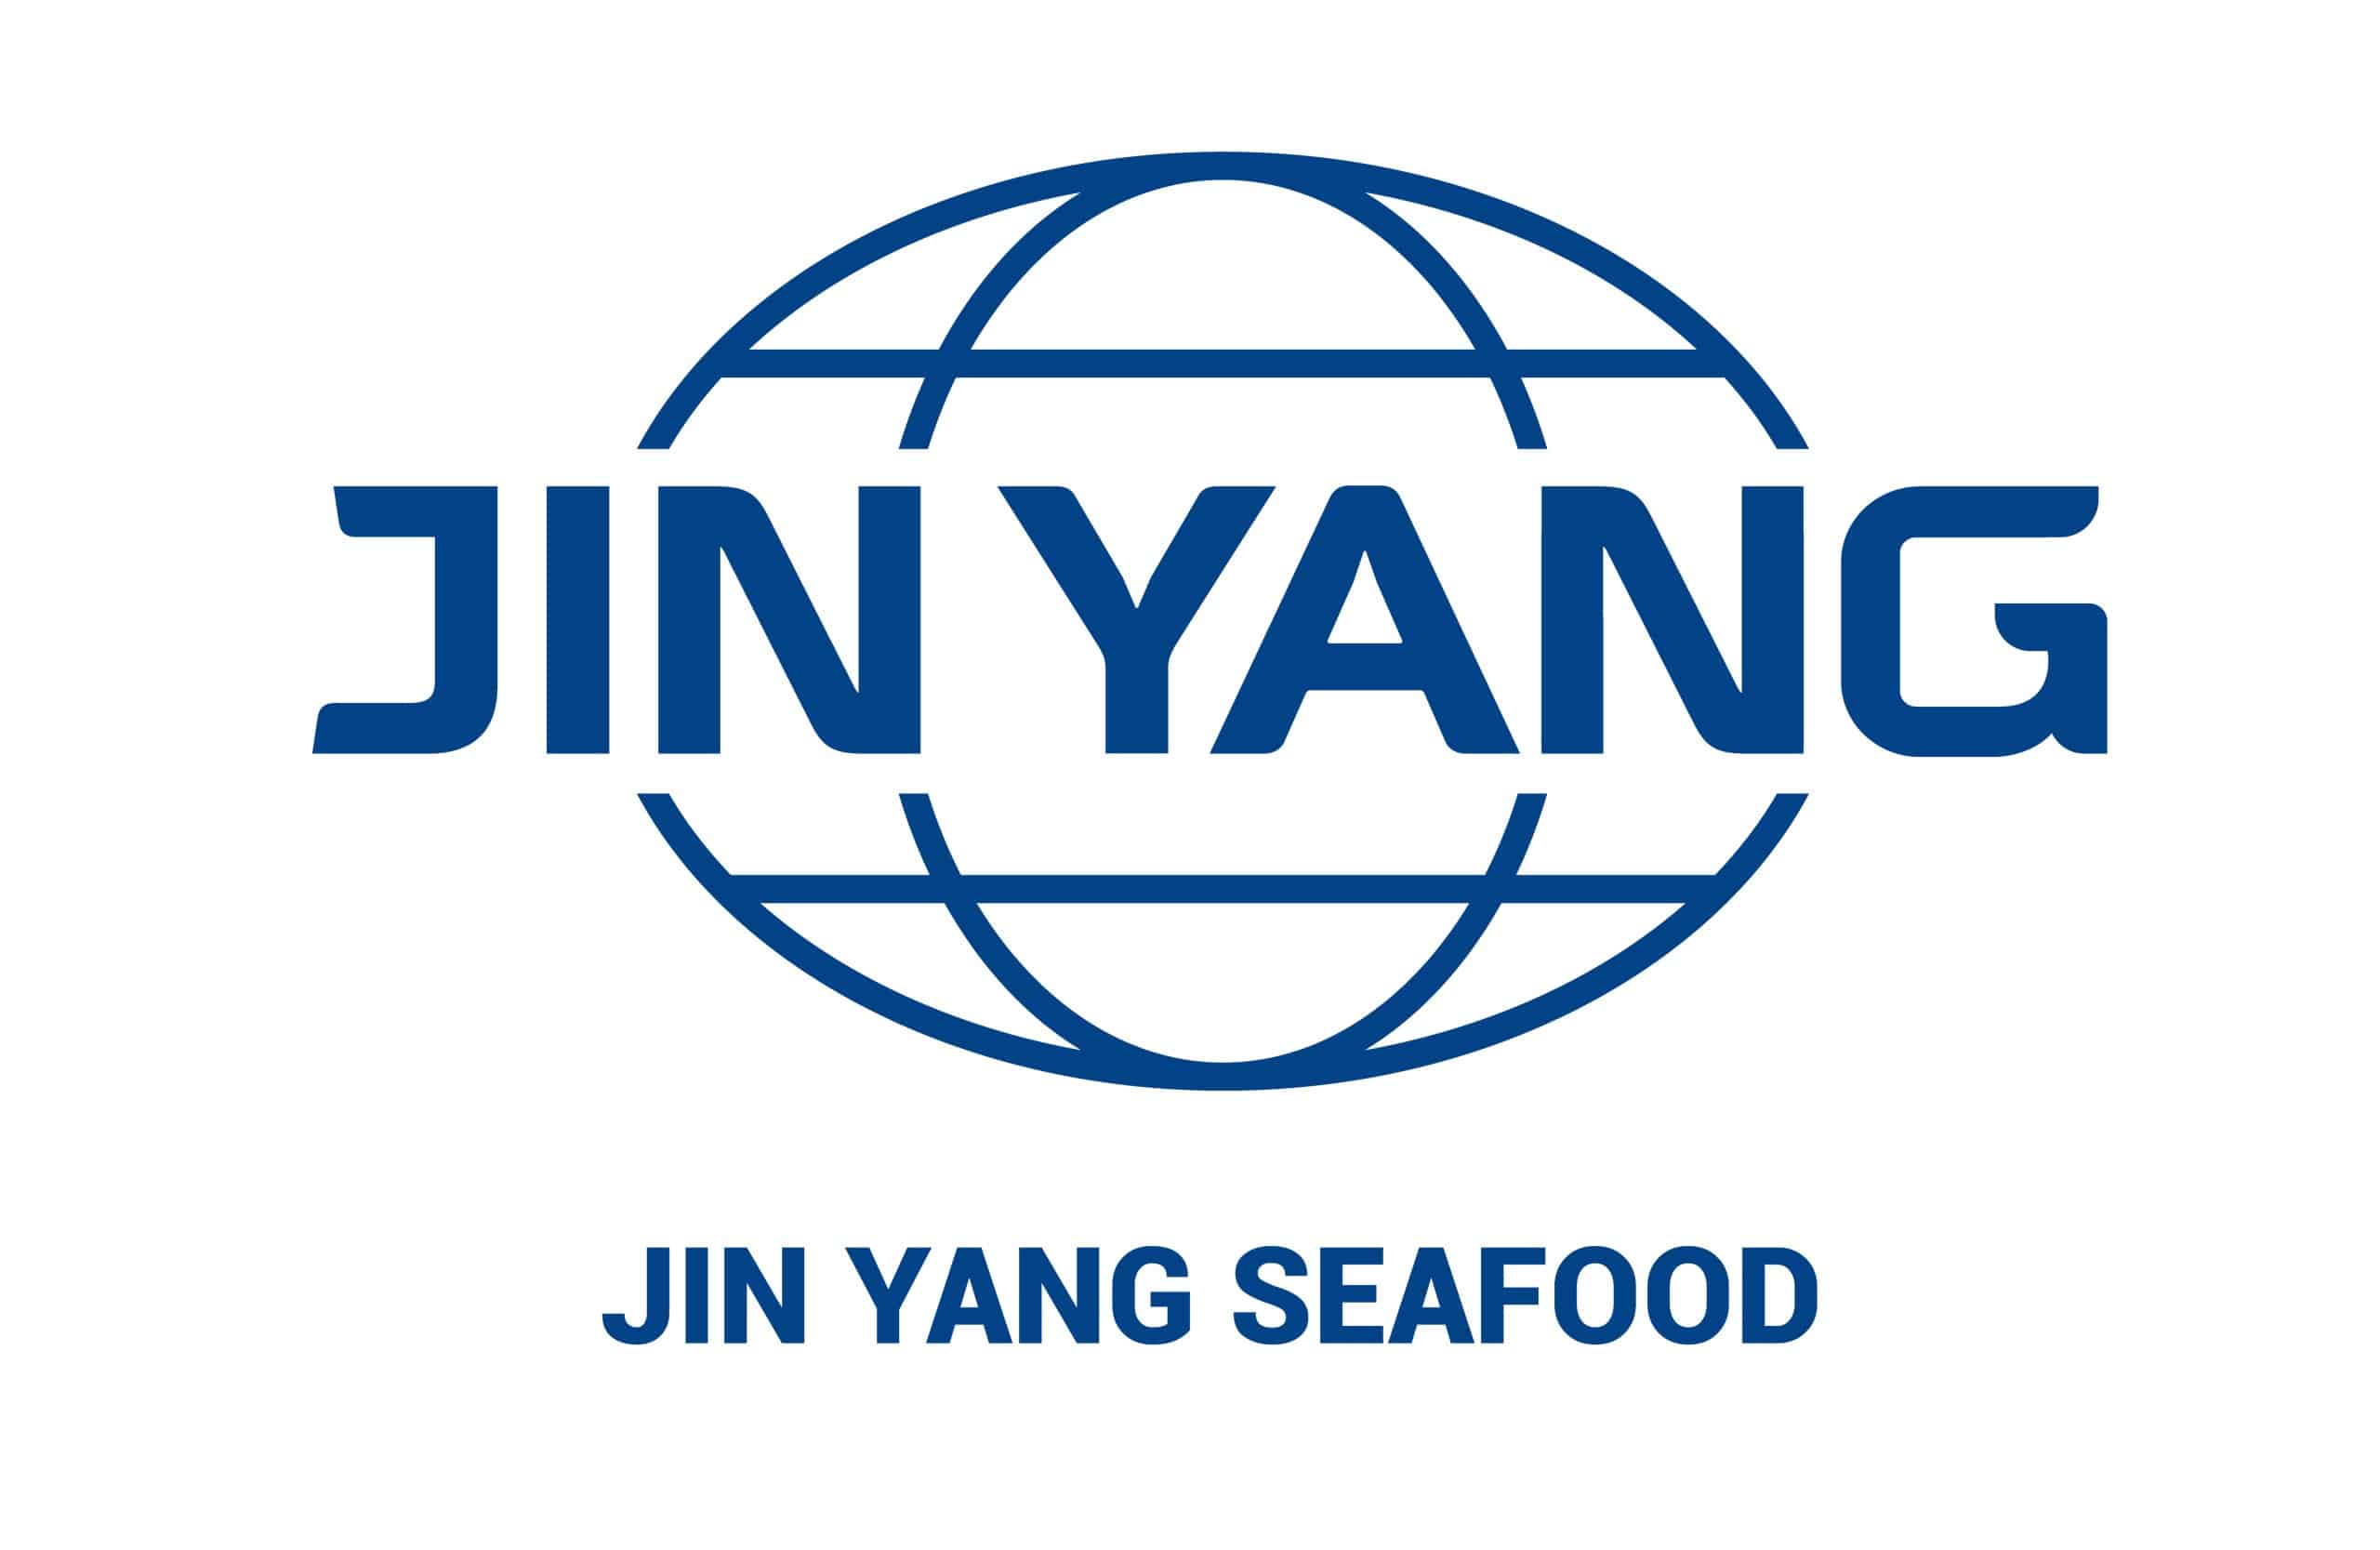 Jin Yang Food